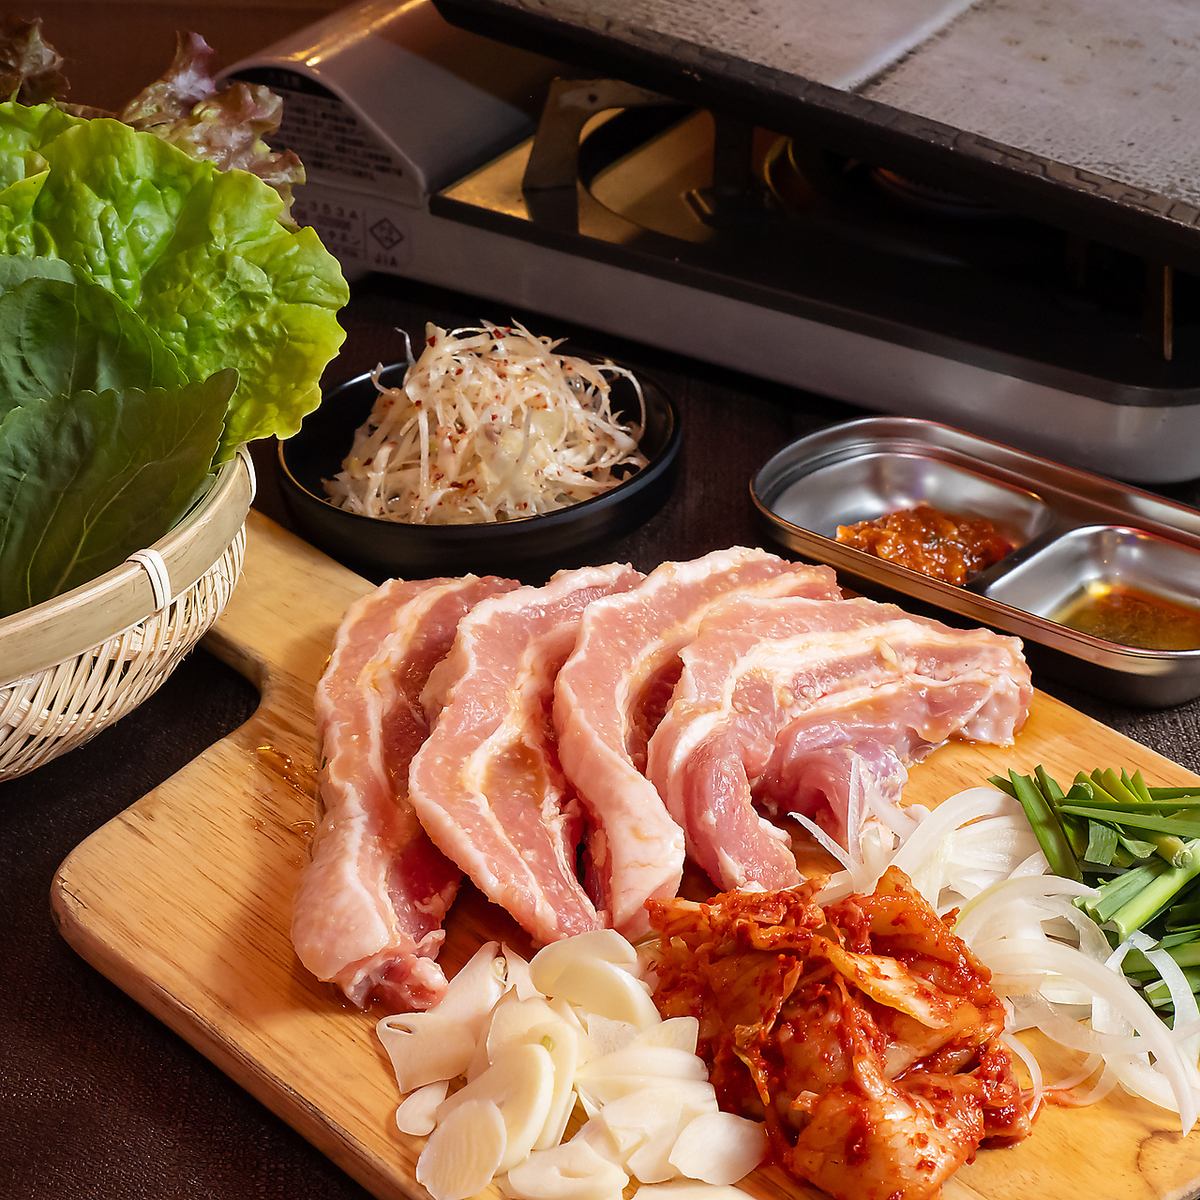 가장 인기있는 삼겹살은 먹을 수 있는 국산 돼지를 사용◎